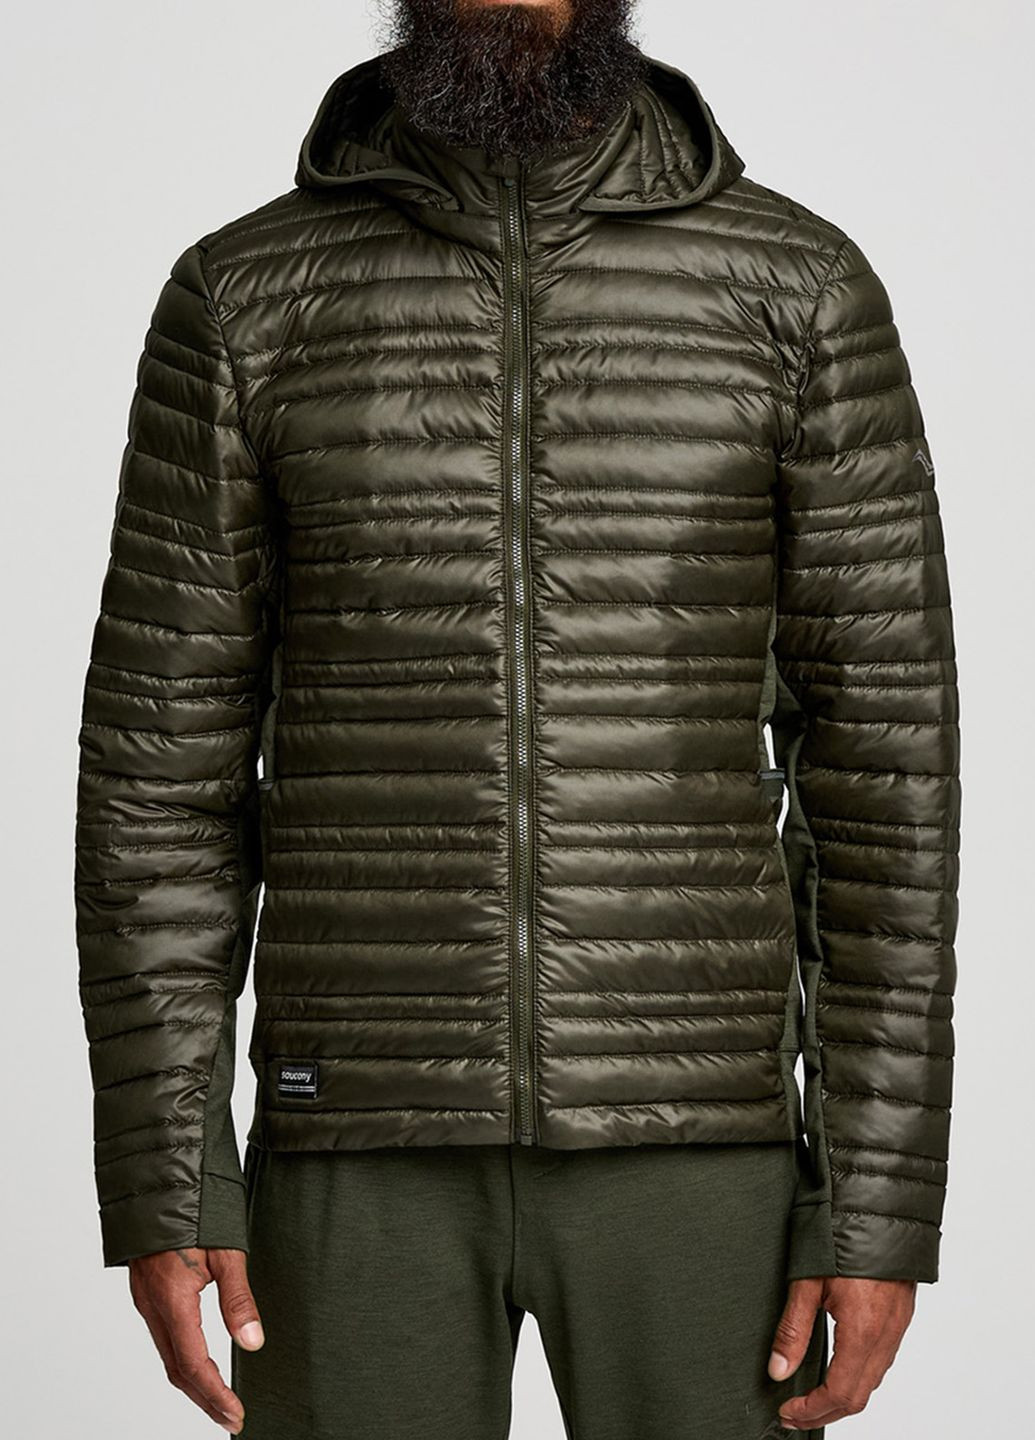 Оливковая (хаки) демисезонная спортивная куртка цвета хаки solstice oysterpuff jacket Saucony